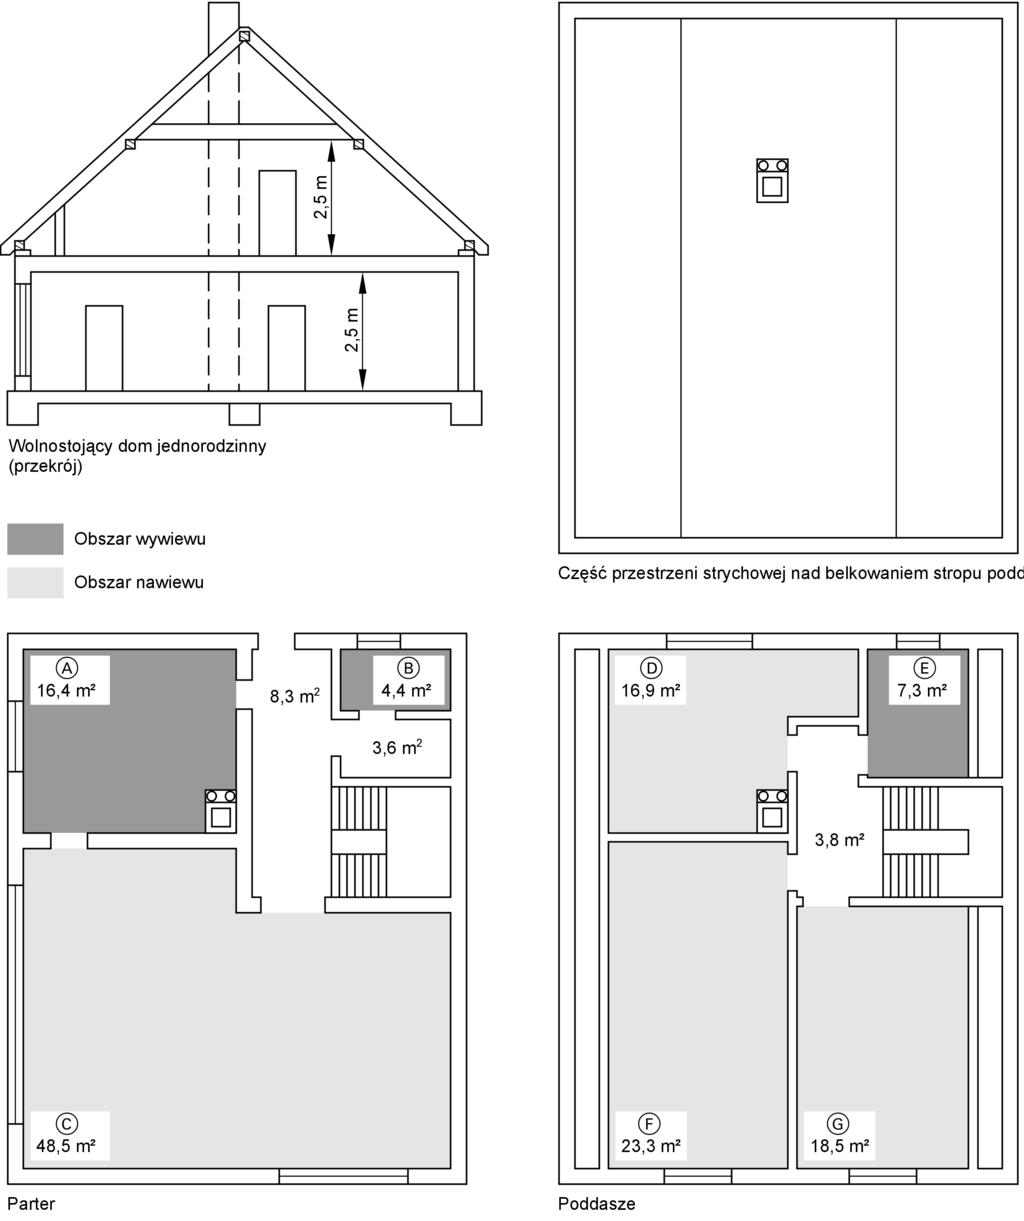 Dobór (ciąg dalszy) & WC & Pomieszczenie robocze Obszar wywiewu i nawiewu (przykład: wolnostojący dom jednorodzinny o całkowitej powierzchni